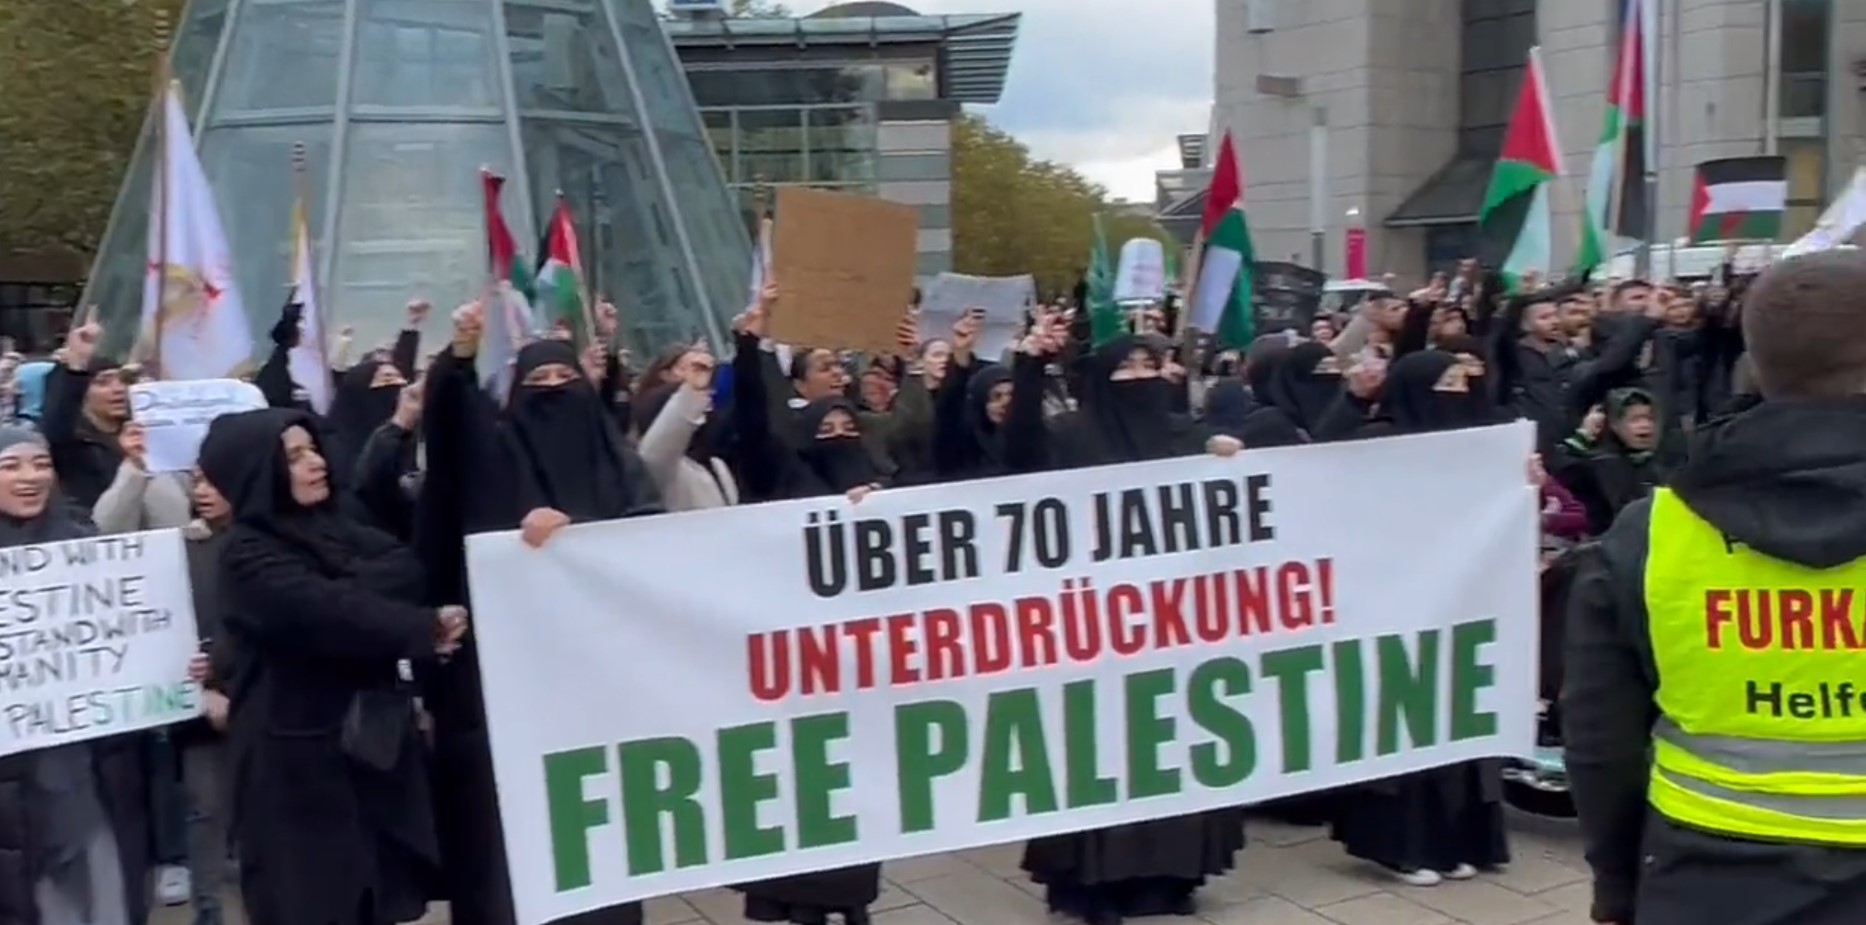 Islamistische Kundgebung in Hamburg: Die Furkan-Gemeinschaft und ihre radikalen Ziele